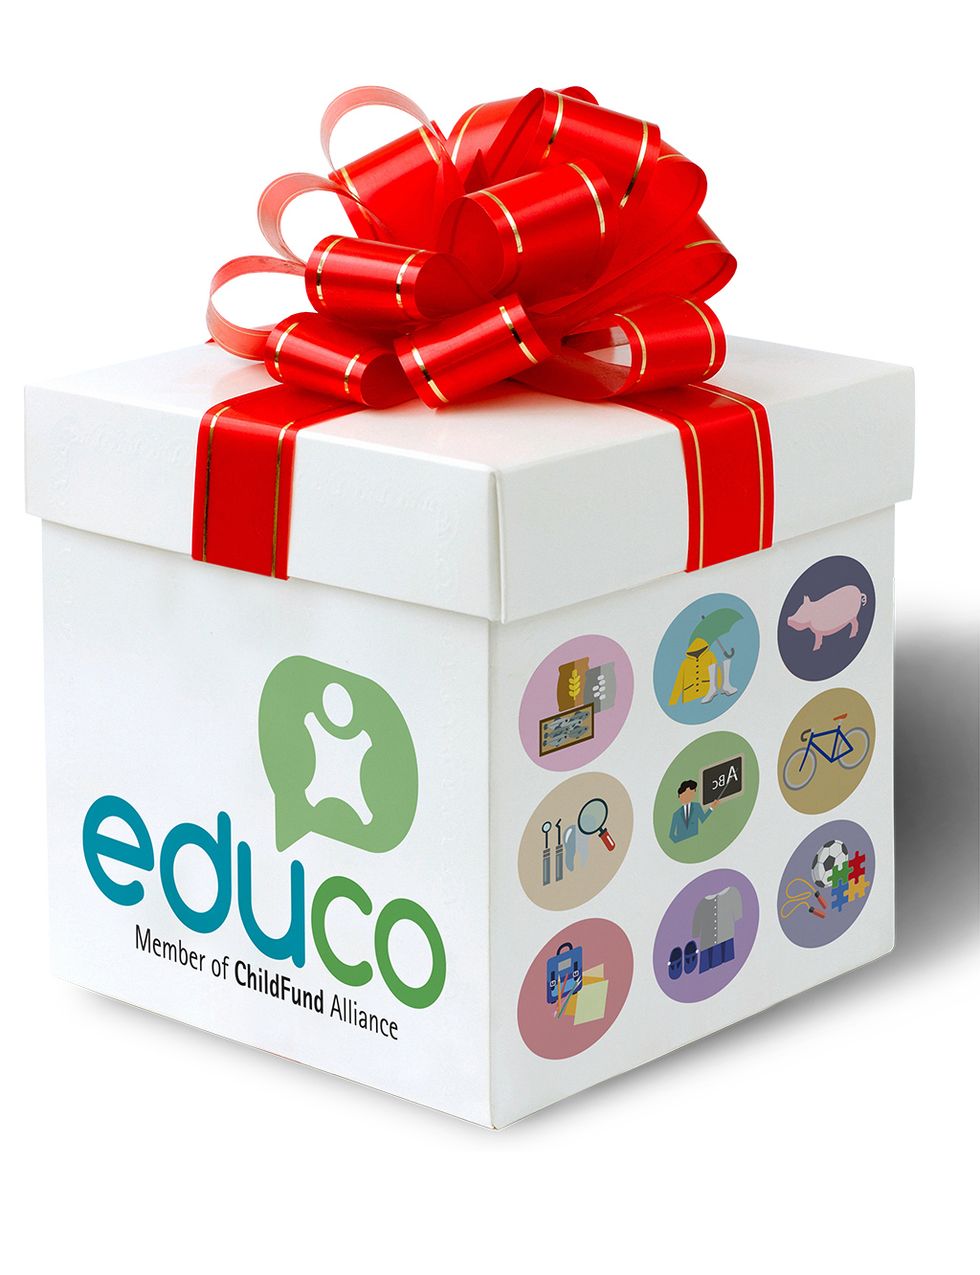 <p>La ONG <a href="https://www.educo.org/QUE-PUEDES-HACER-TU/Catalogo-de-regalos" target="_blank"><strong>Educo</strong></a> nos propone un regalo muy especial: entrar en su web y elegir un detalle solidario desde 6 euros. Un paquete escolar, ocho palanganas, un kit de alimentos... Escoge según tu presupuesto y contribuye a que el mundo esté un poco mejor.</p>